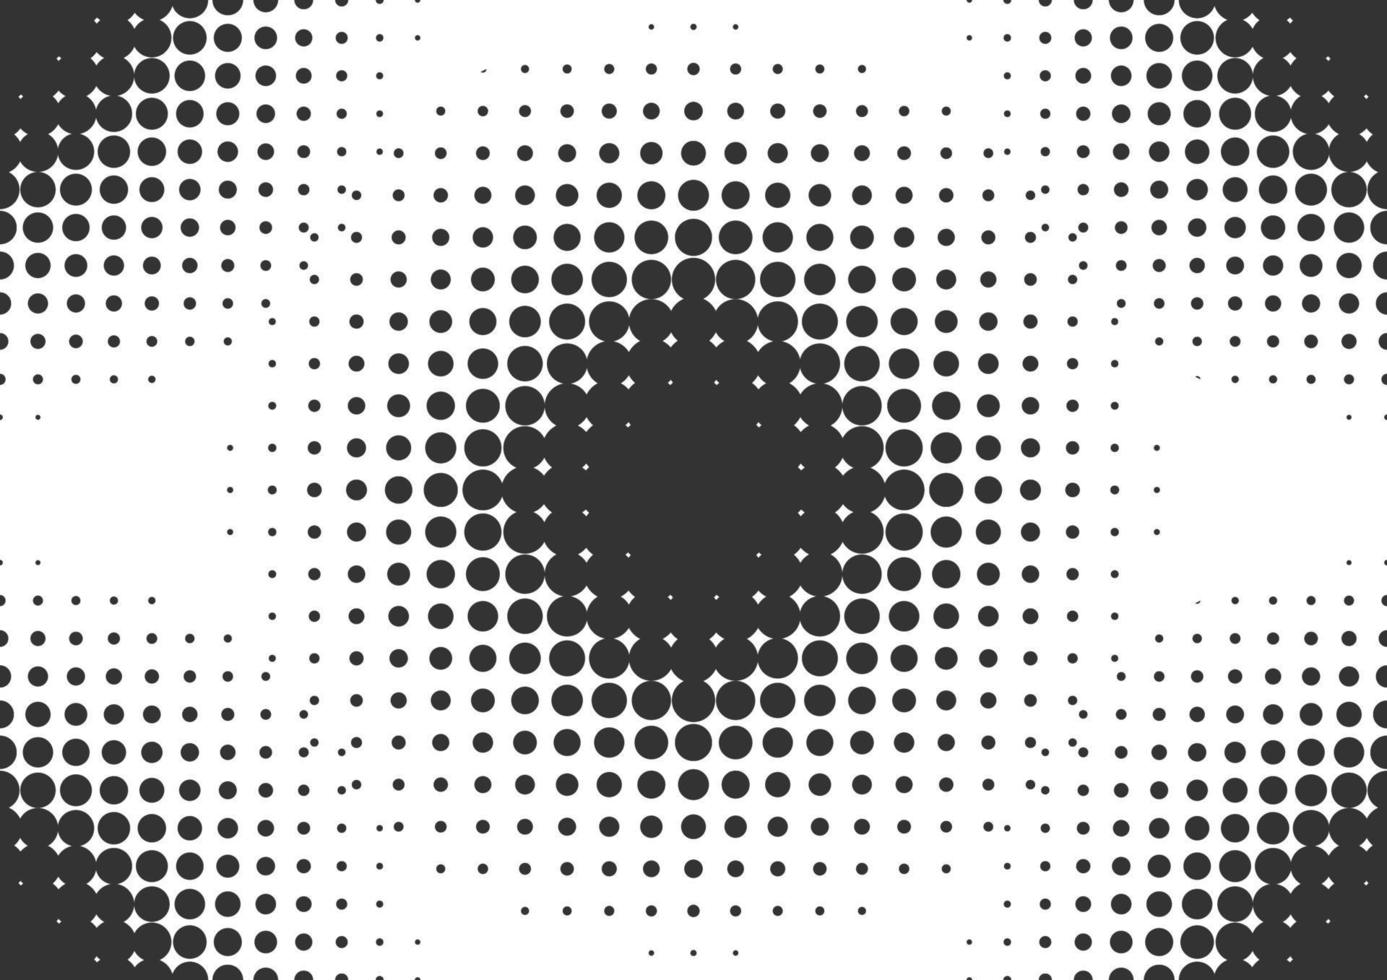 abstrakt svarta och vita prickar halvton bakgrund vektor